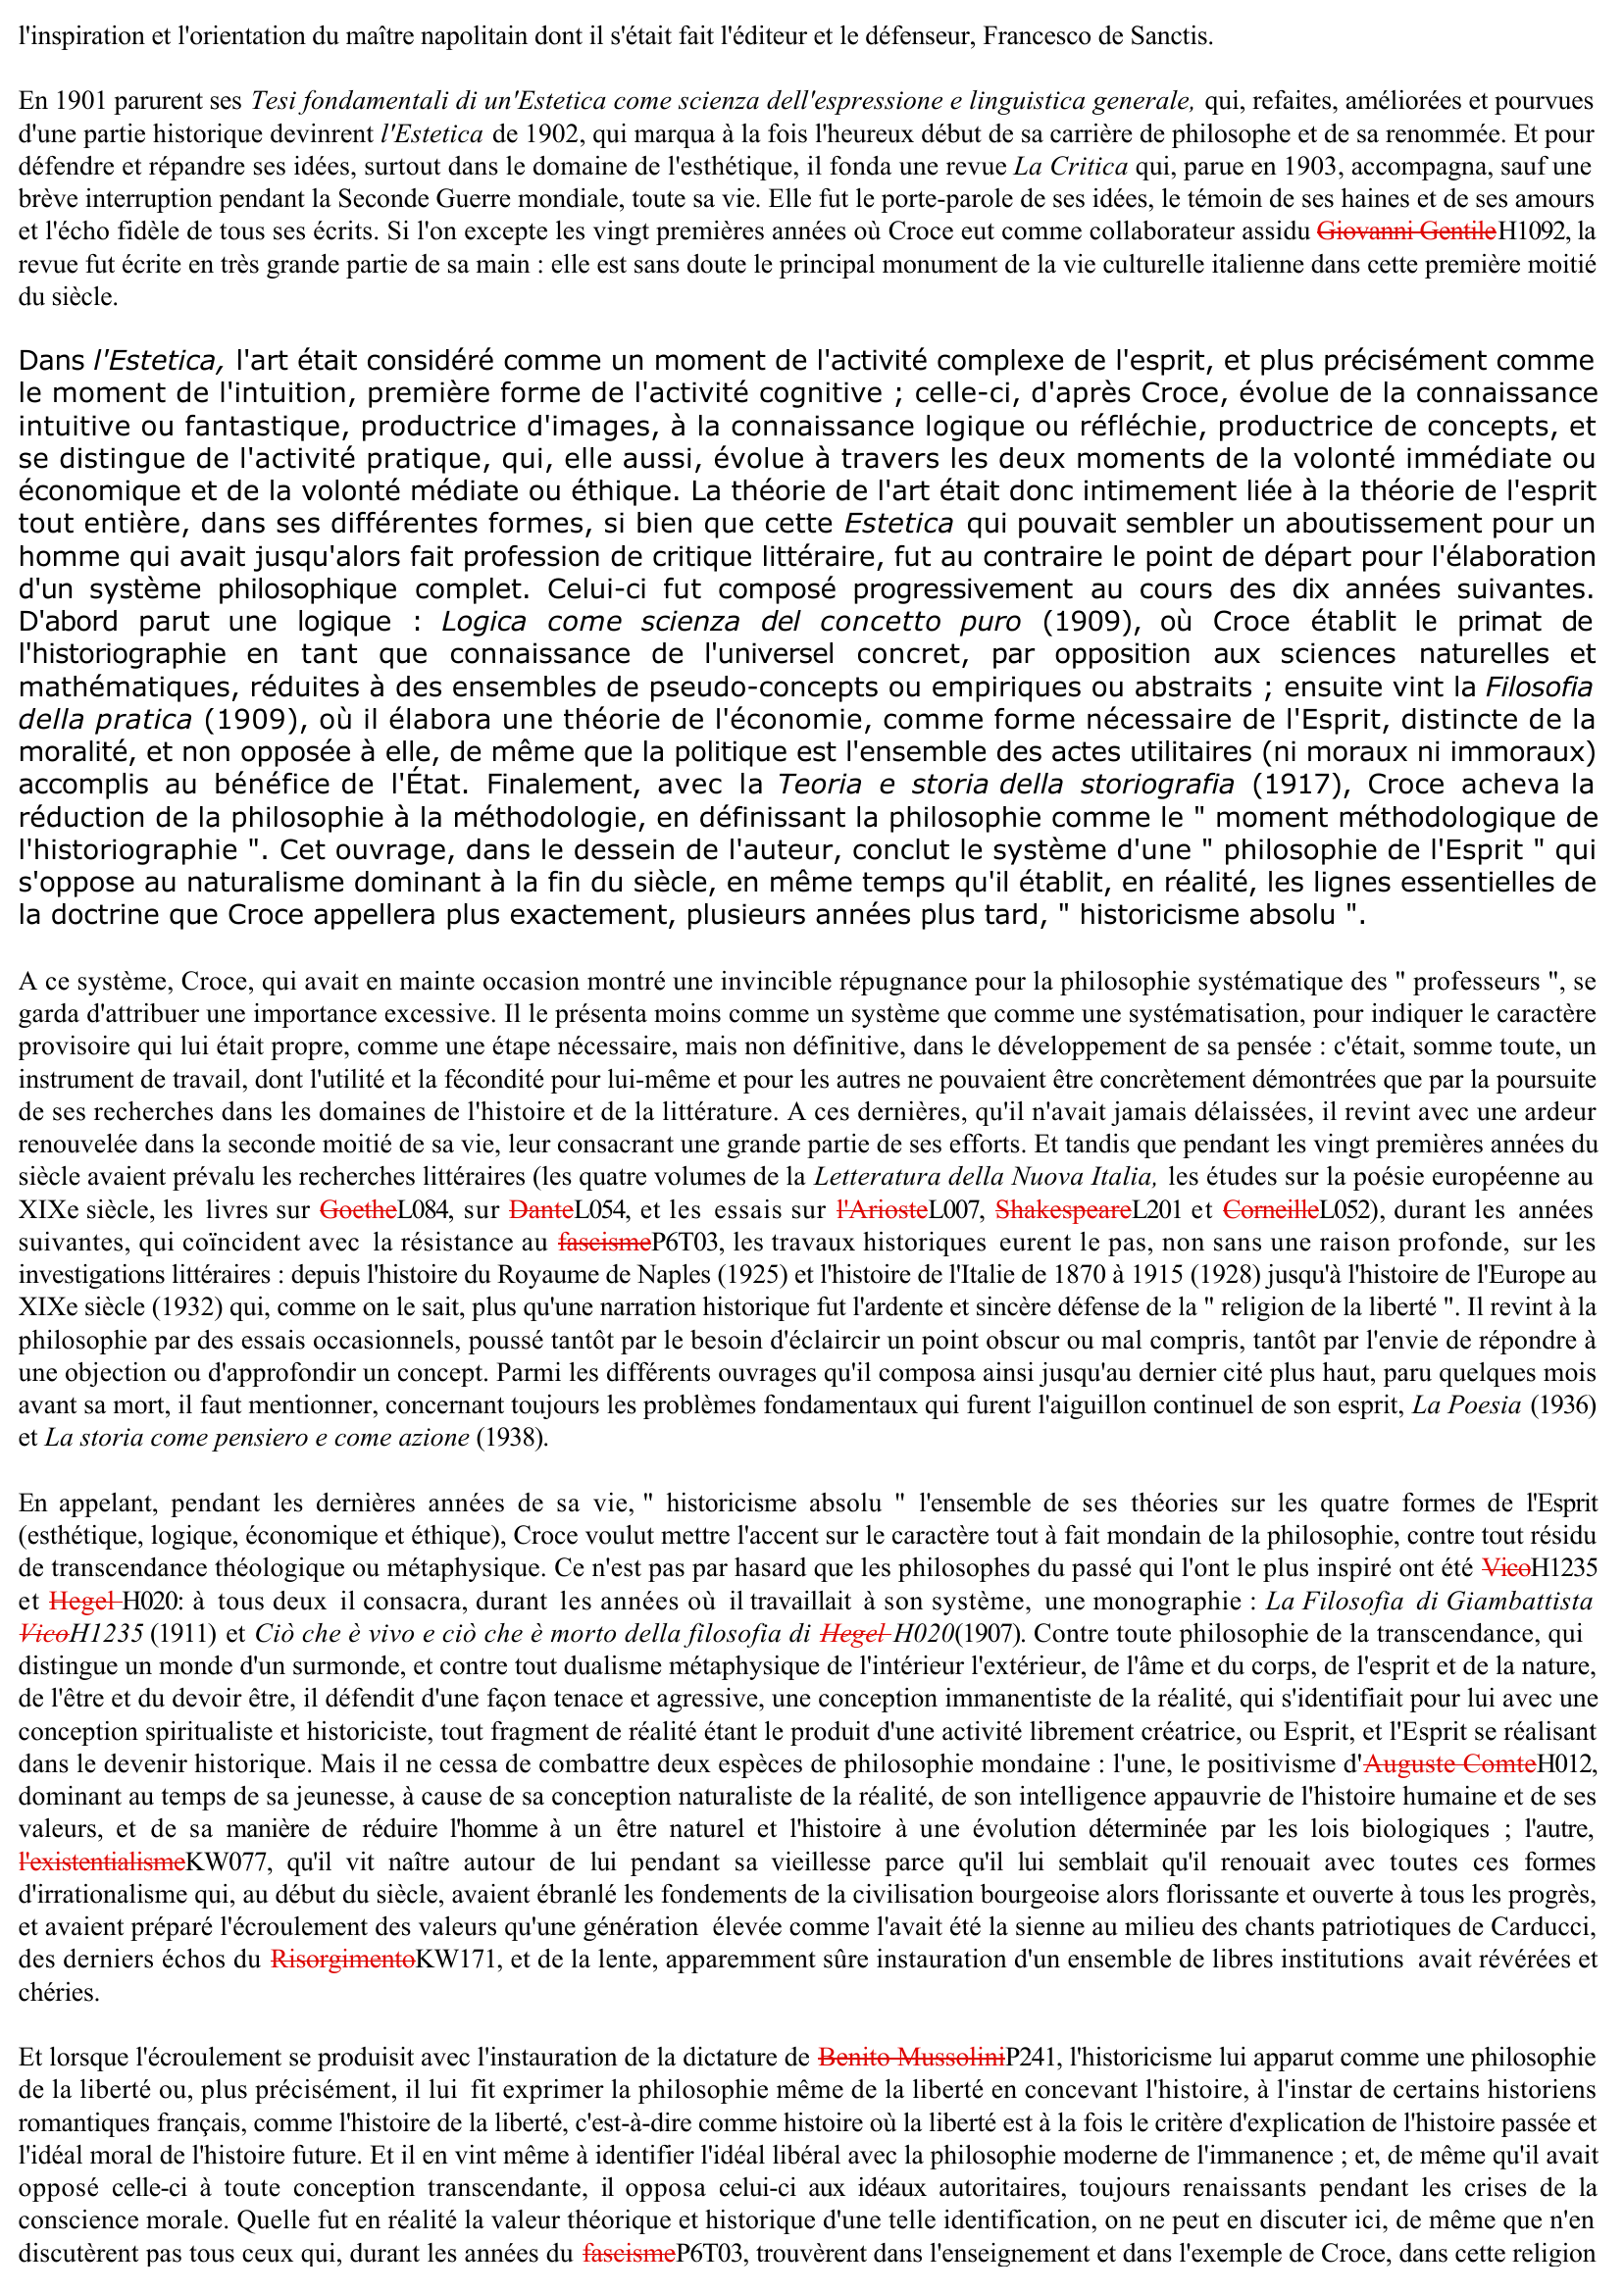 Prévisualisation du document Benedetto Croce